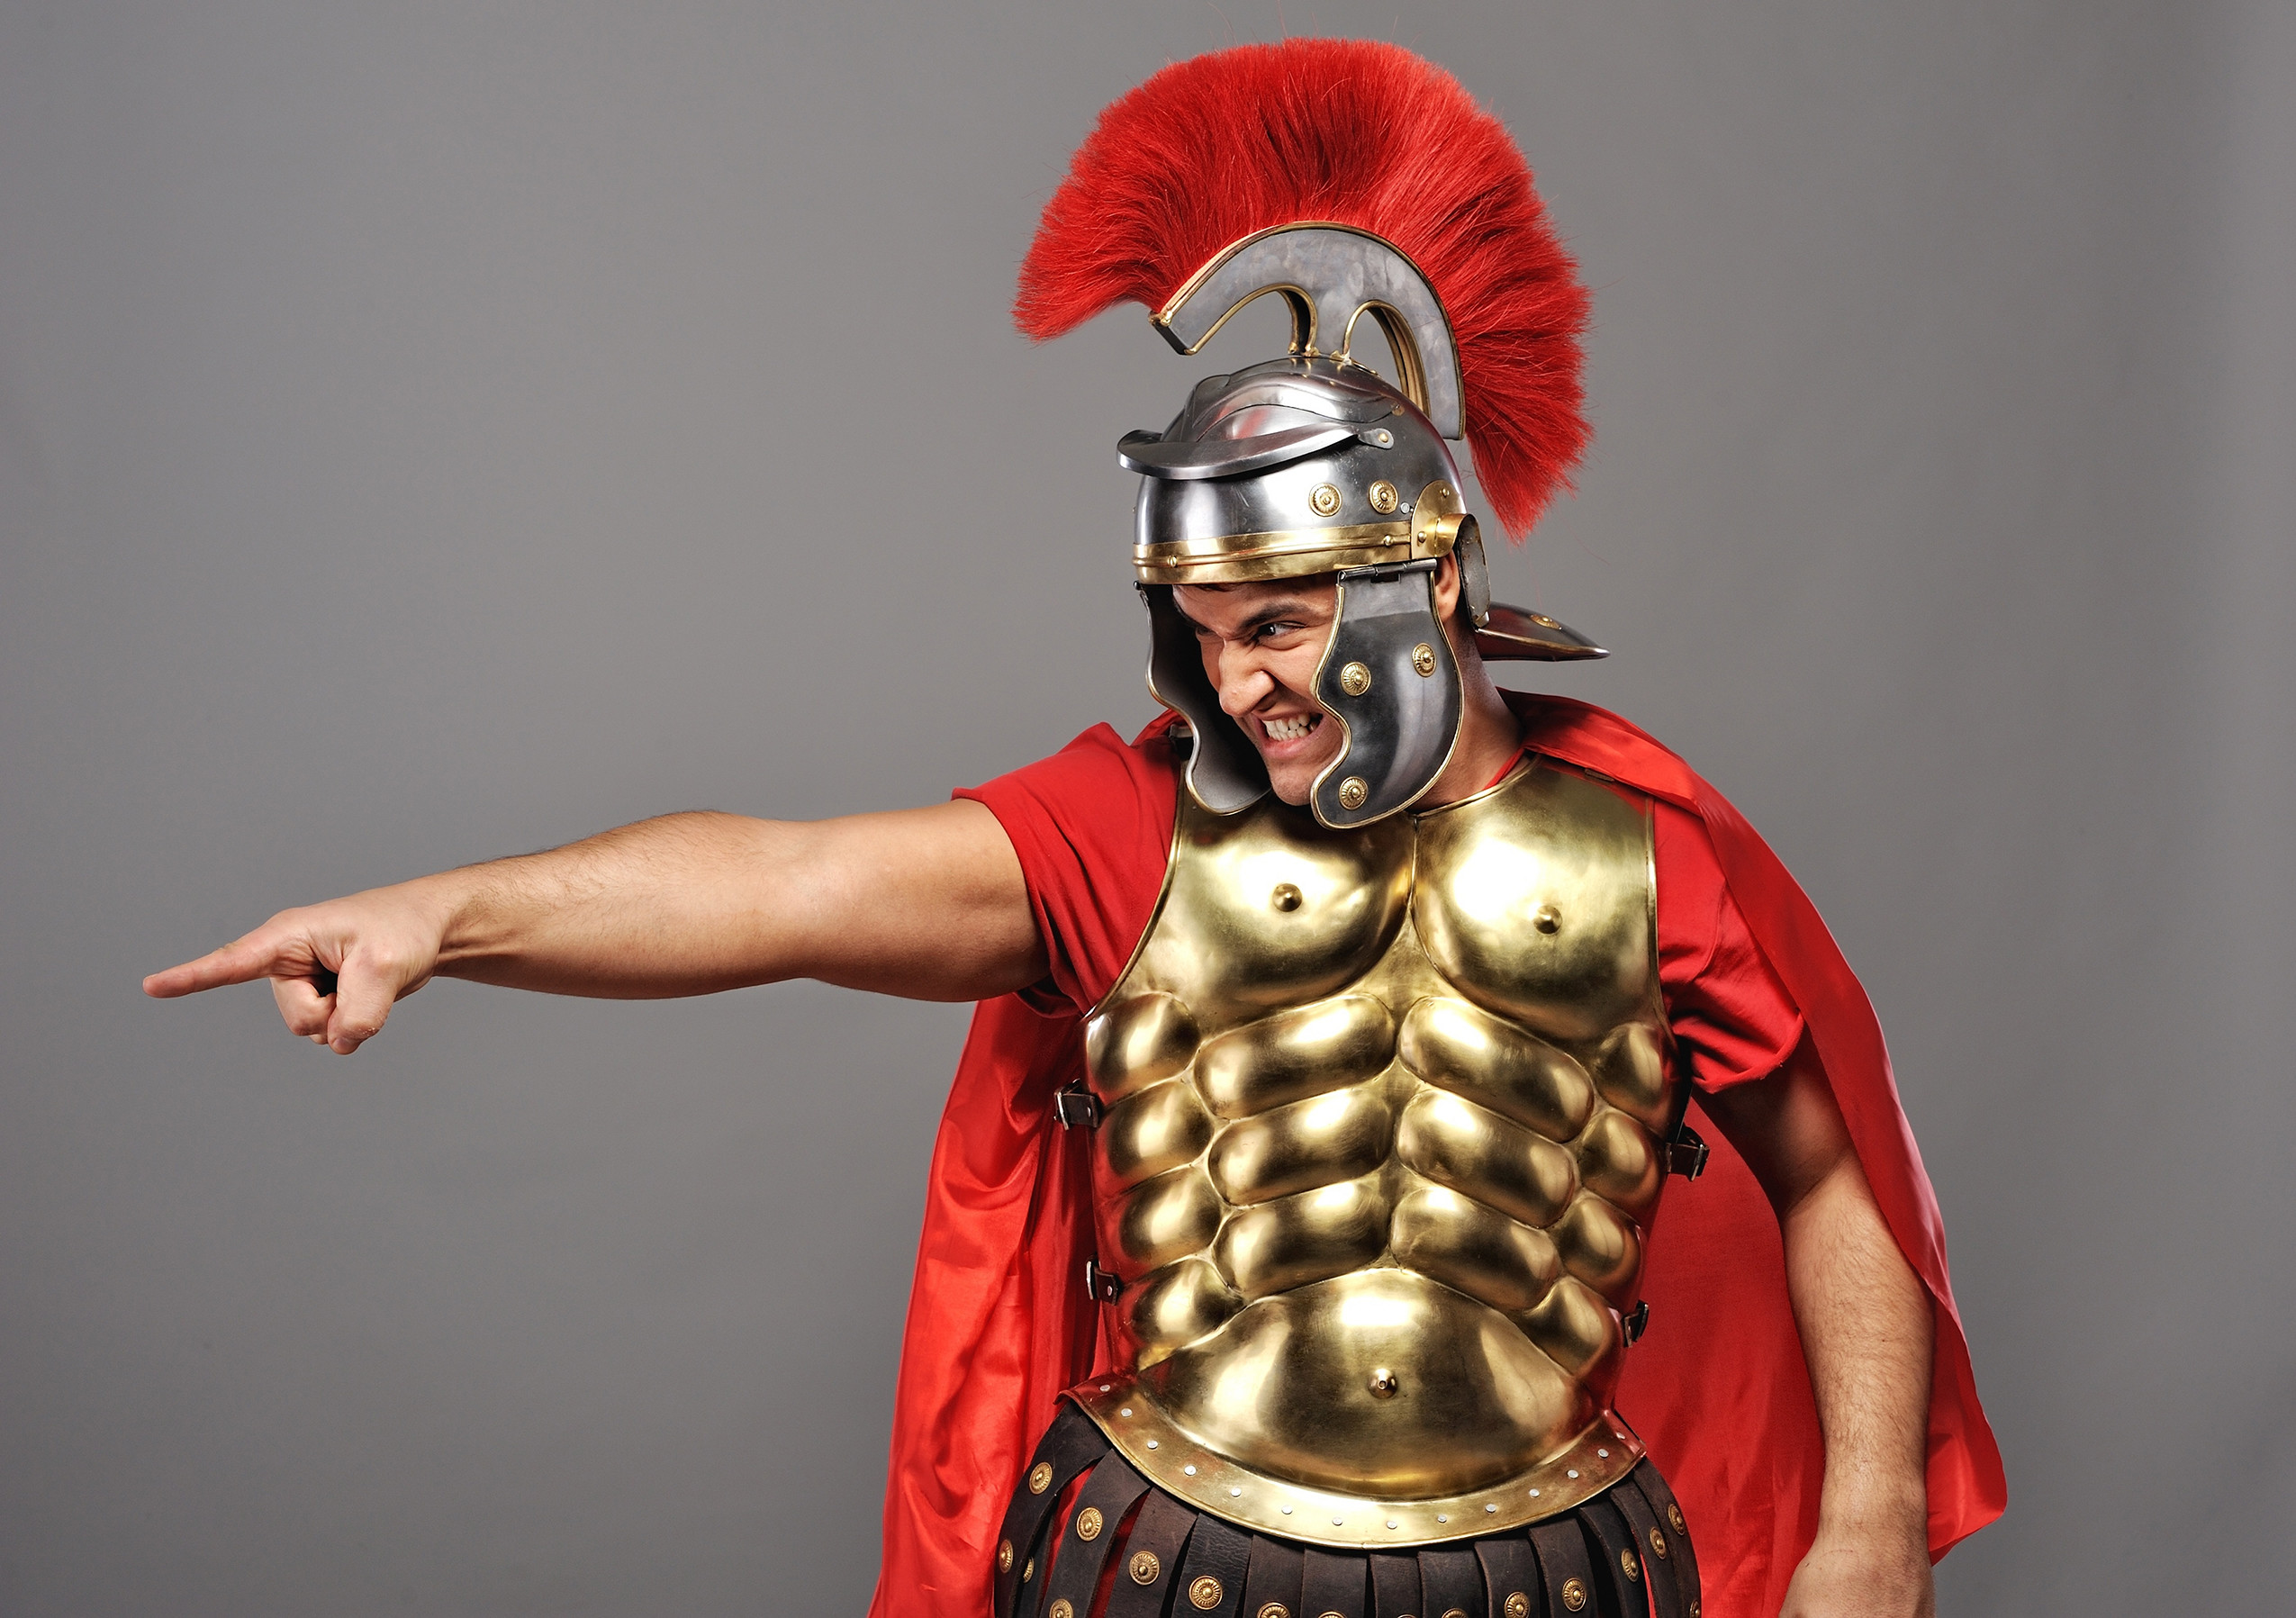 ローマの兵士の壁紙,キュイラス,鎧,胸当て,騎士,金属